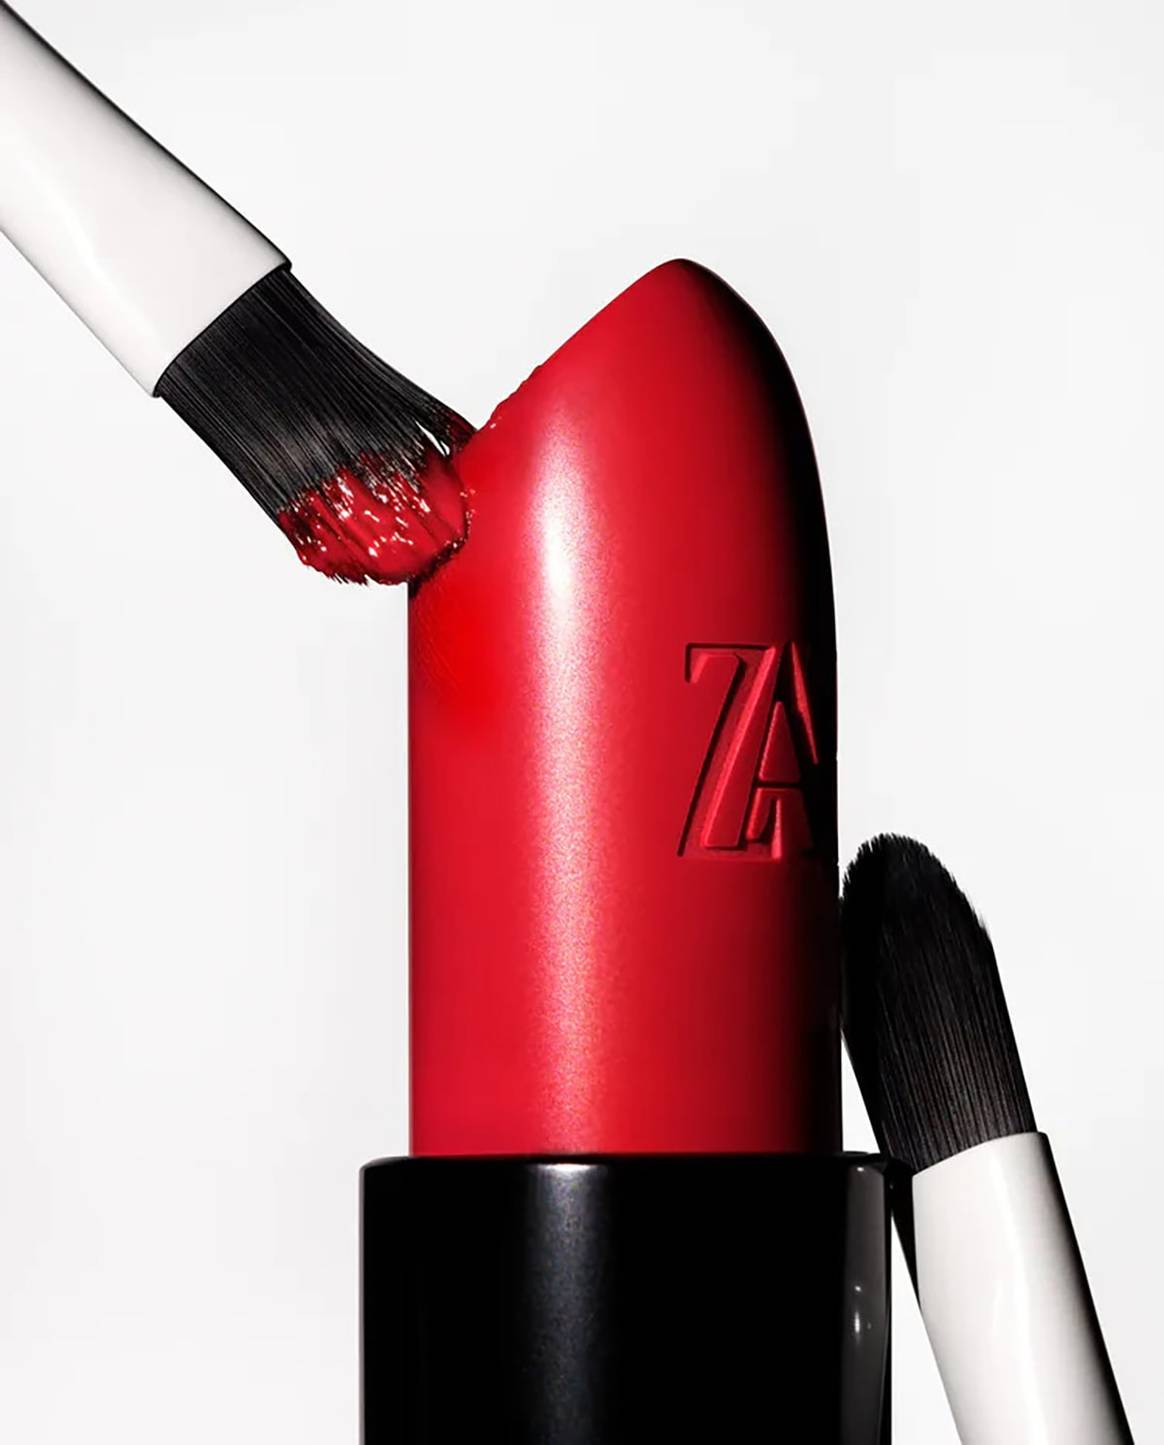 Con sección propia, envases recargables y de aspiración inclusiva: Inditex lanza “Zara Beauty”, la línea cosmética de Zara